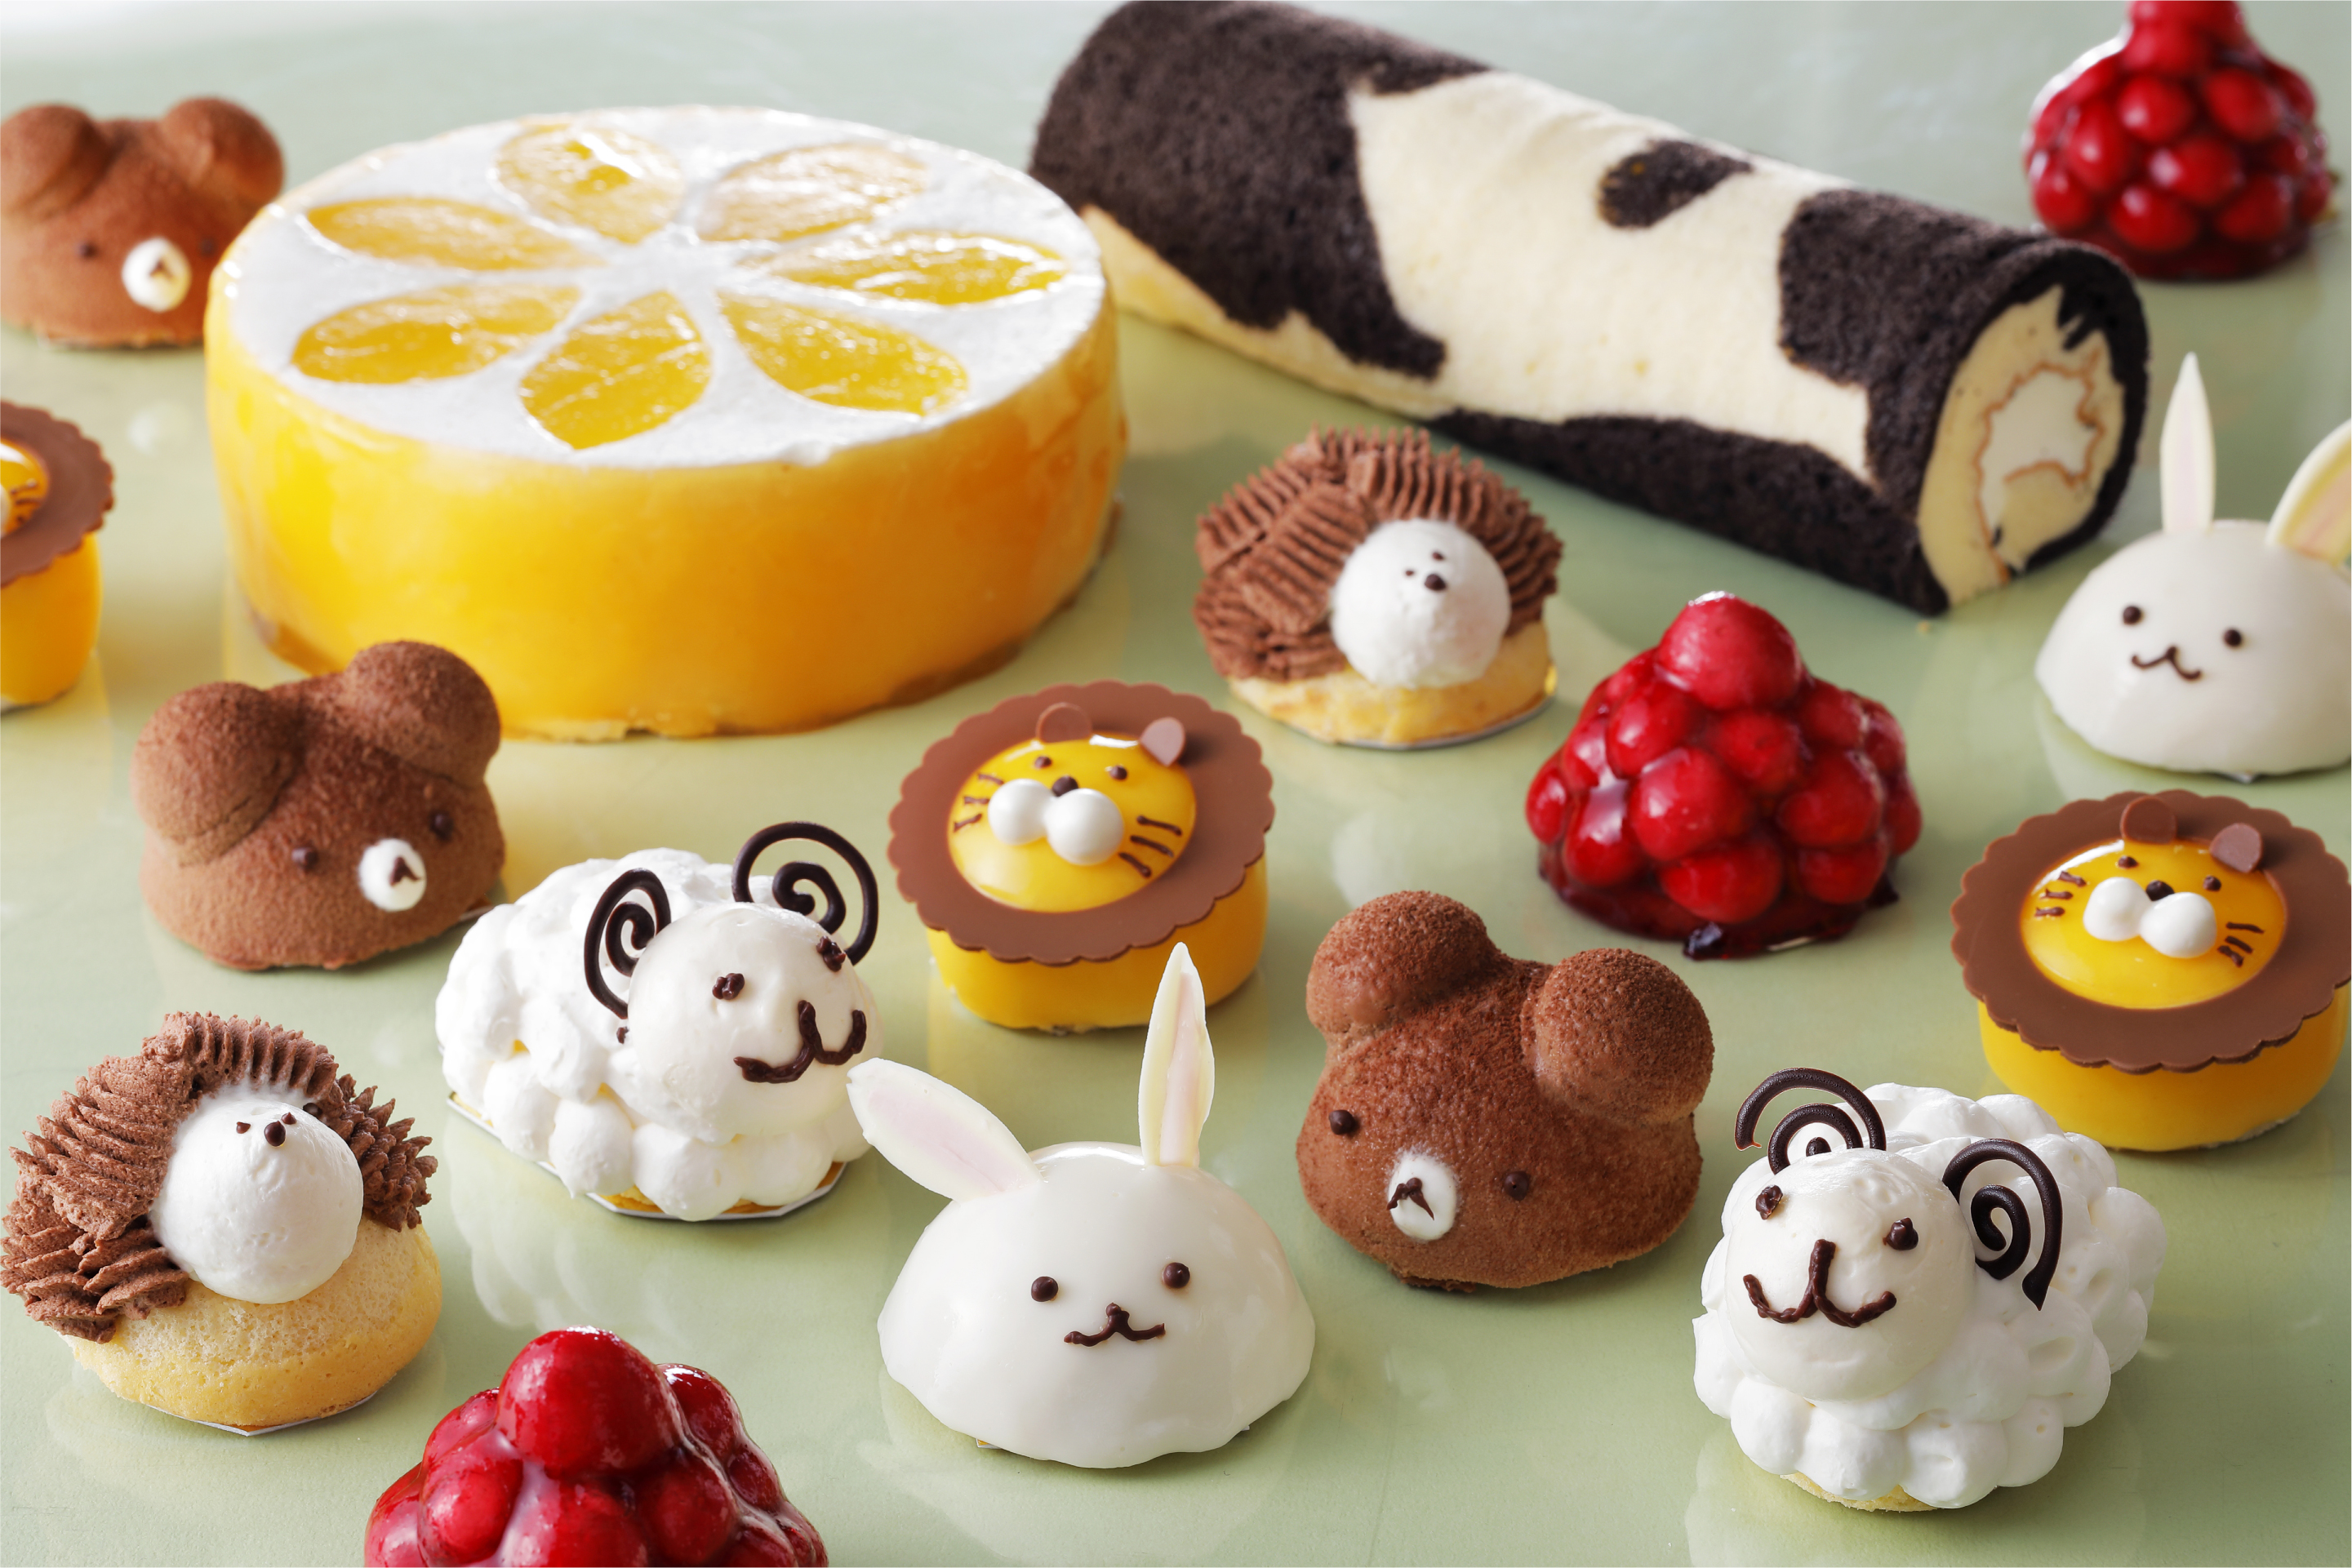 動物モチーフのケーキが多数 一日限定のケーキバイキングを開催 東急reiホテルのプレスリリース